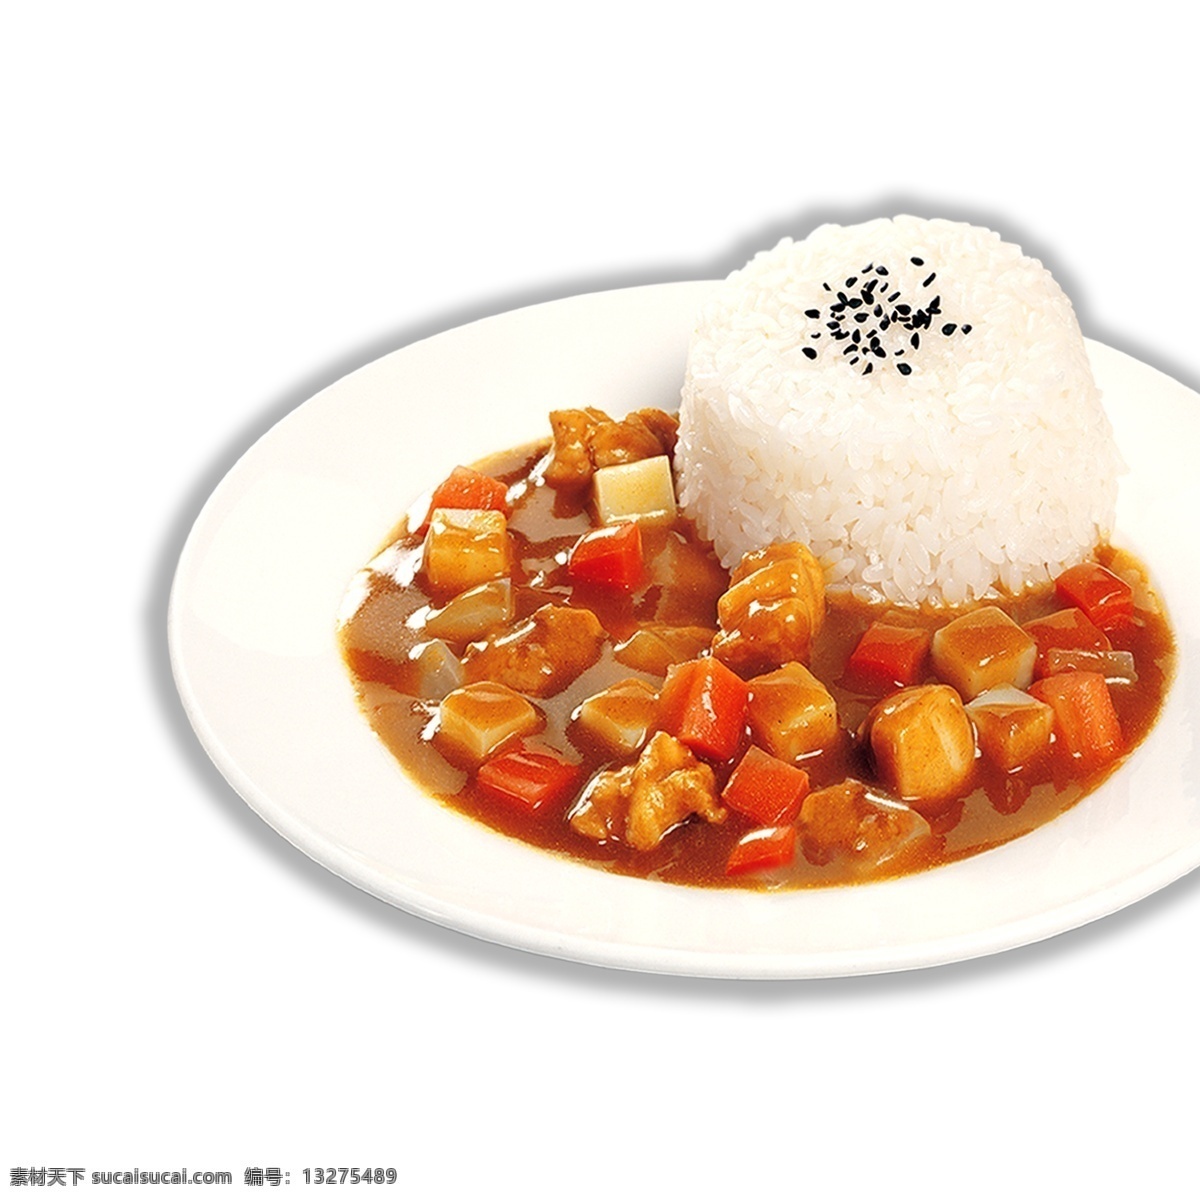 盘 米饭 盖浇饭 美味 食物 水果 餐饮 美食 盘子 蔬菜